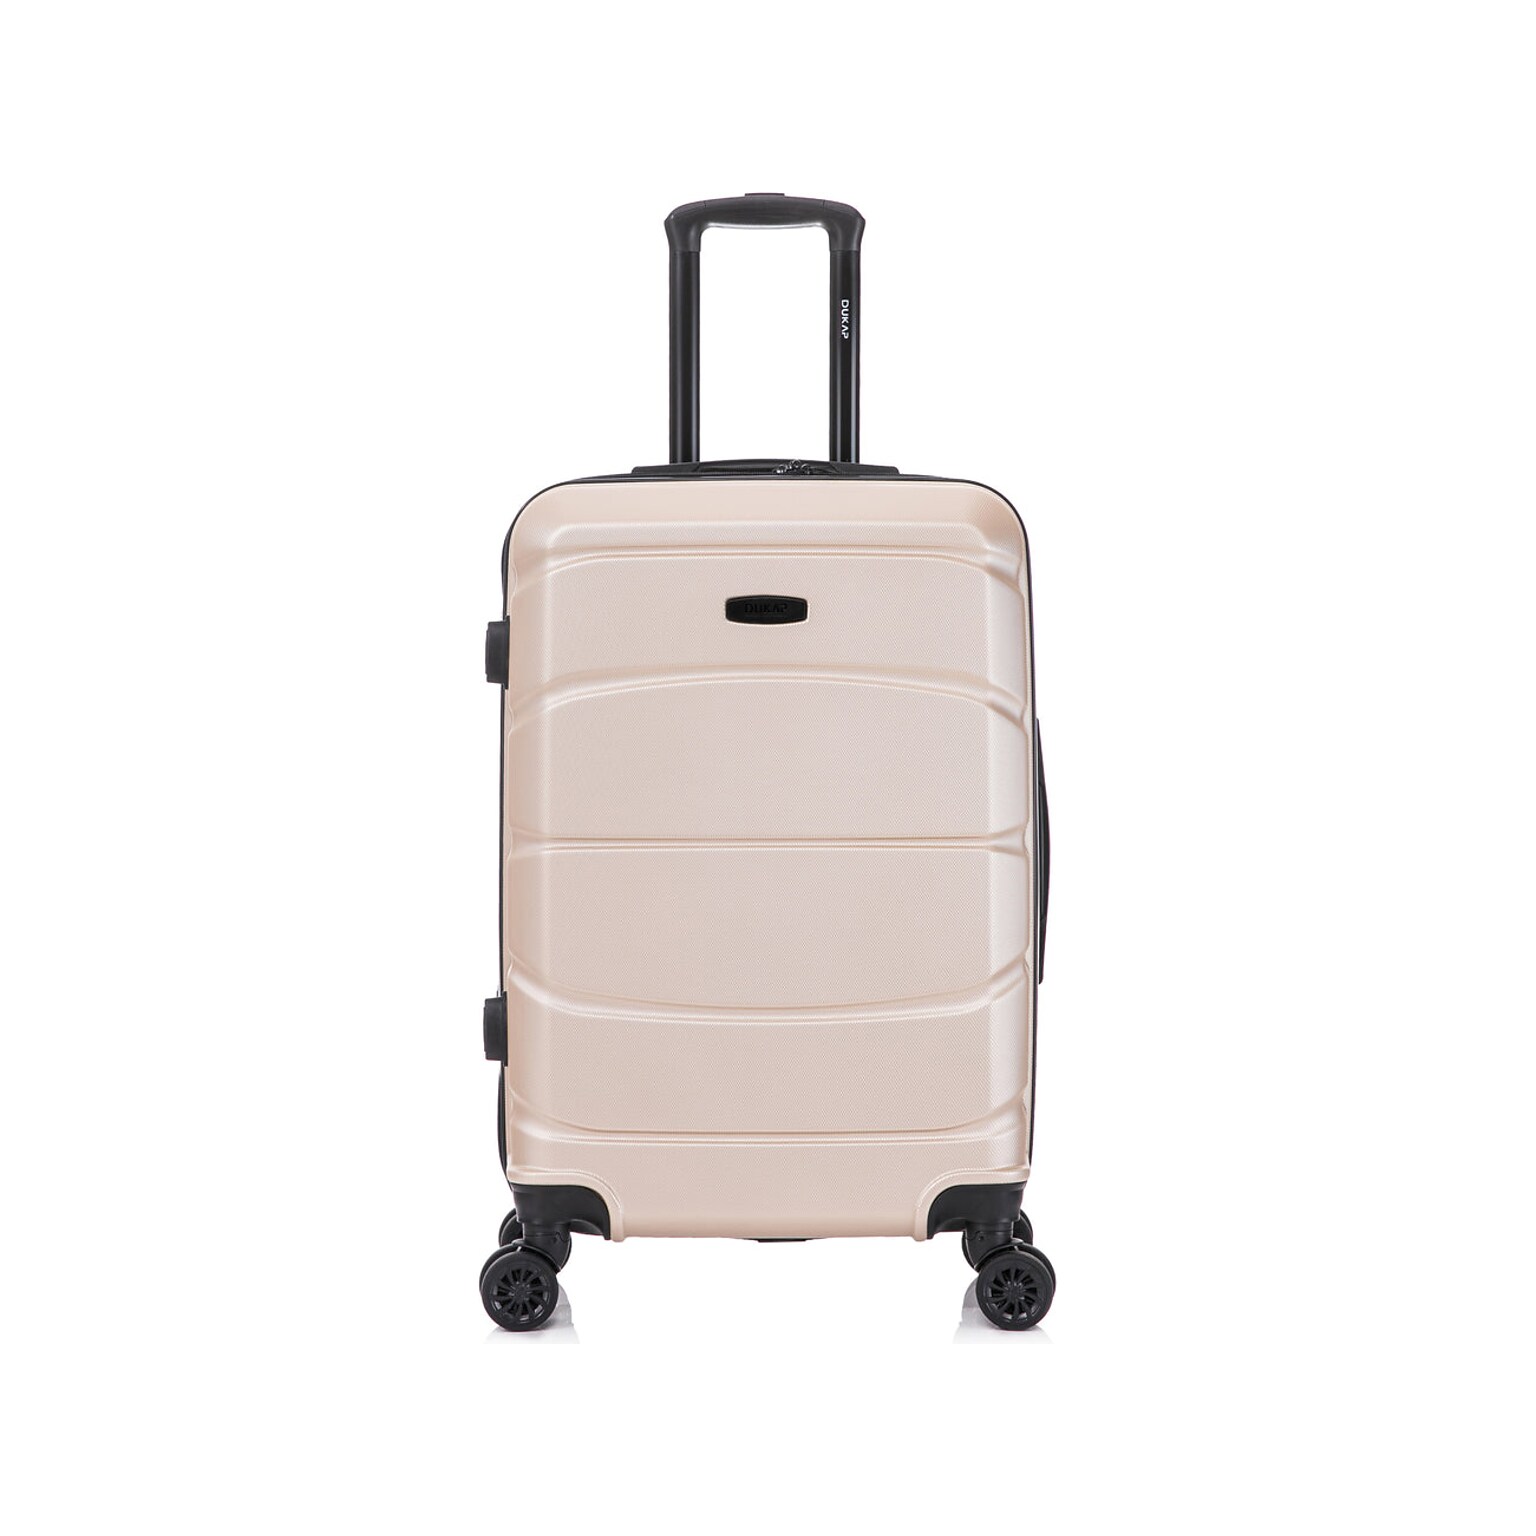 DUKAP Sense 25.39 Hardside Suitcase, 4-Wheeled Spinner, Champagne (DKSEN00M-CHA)